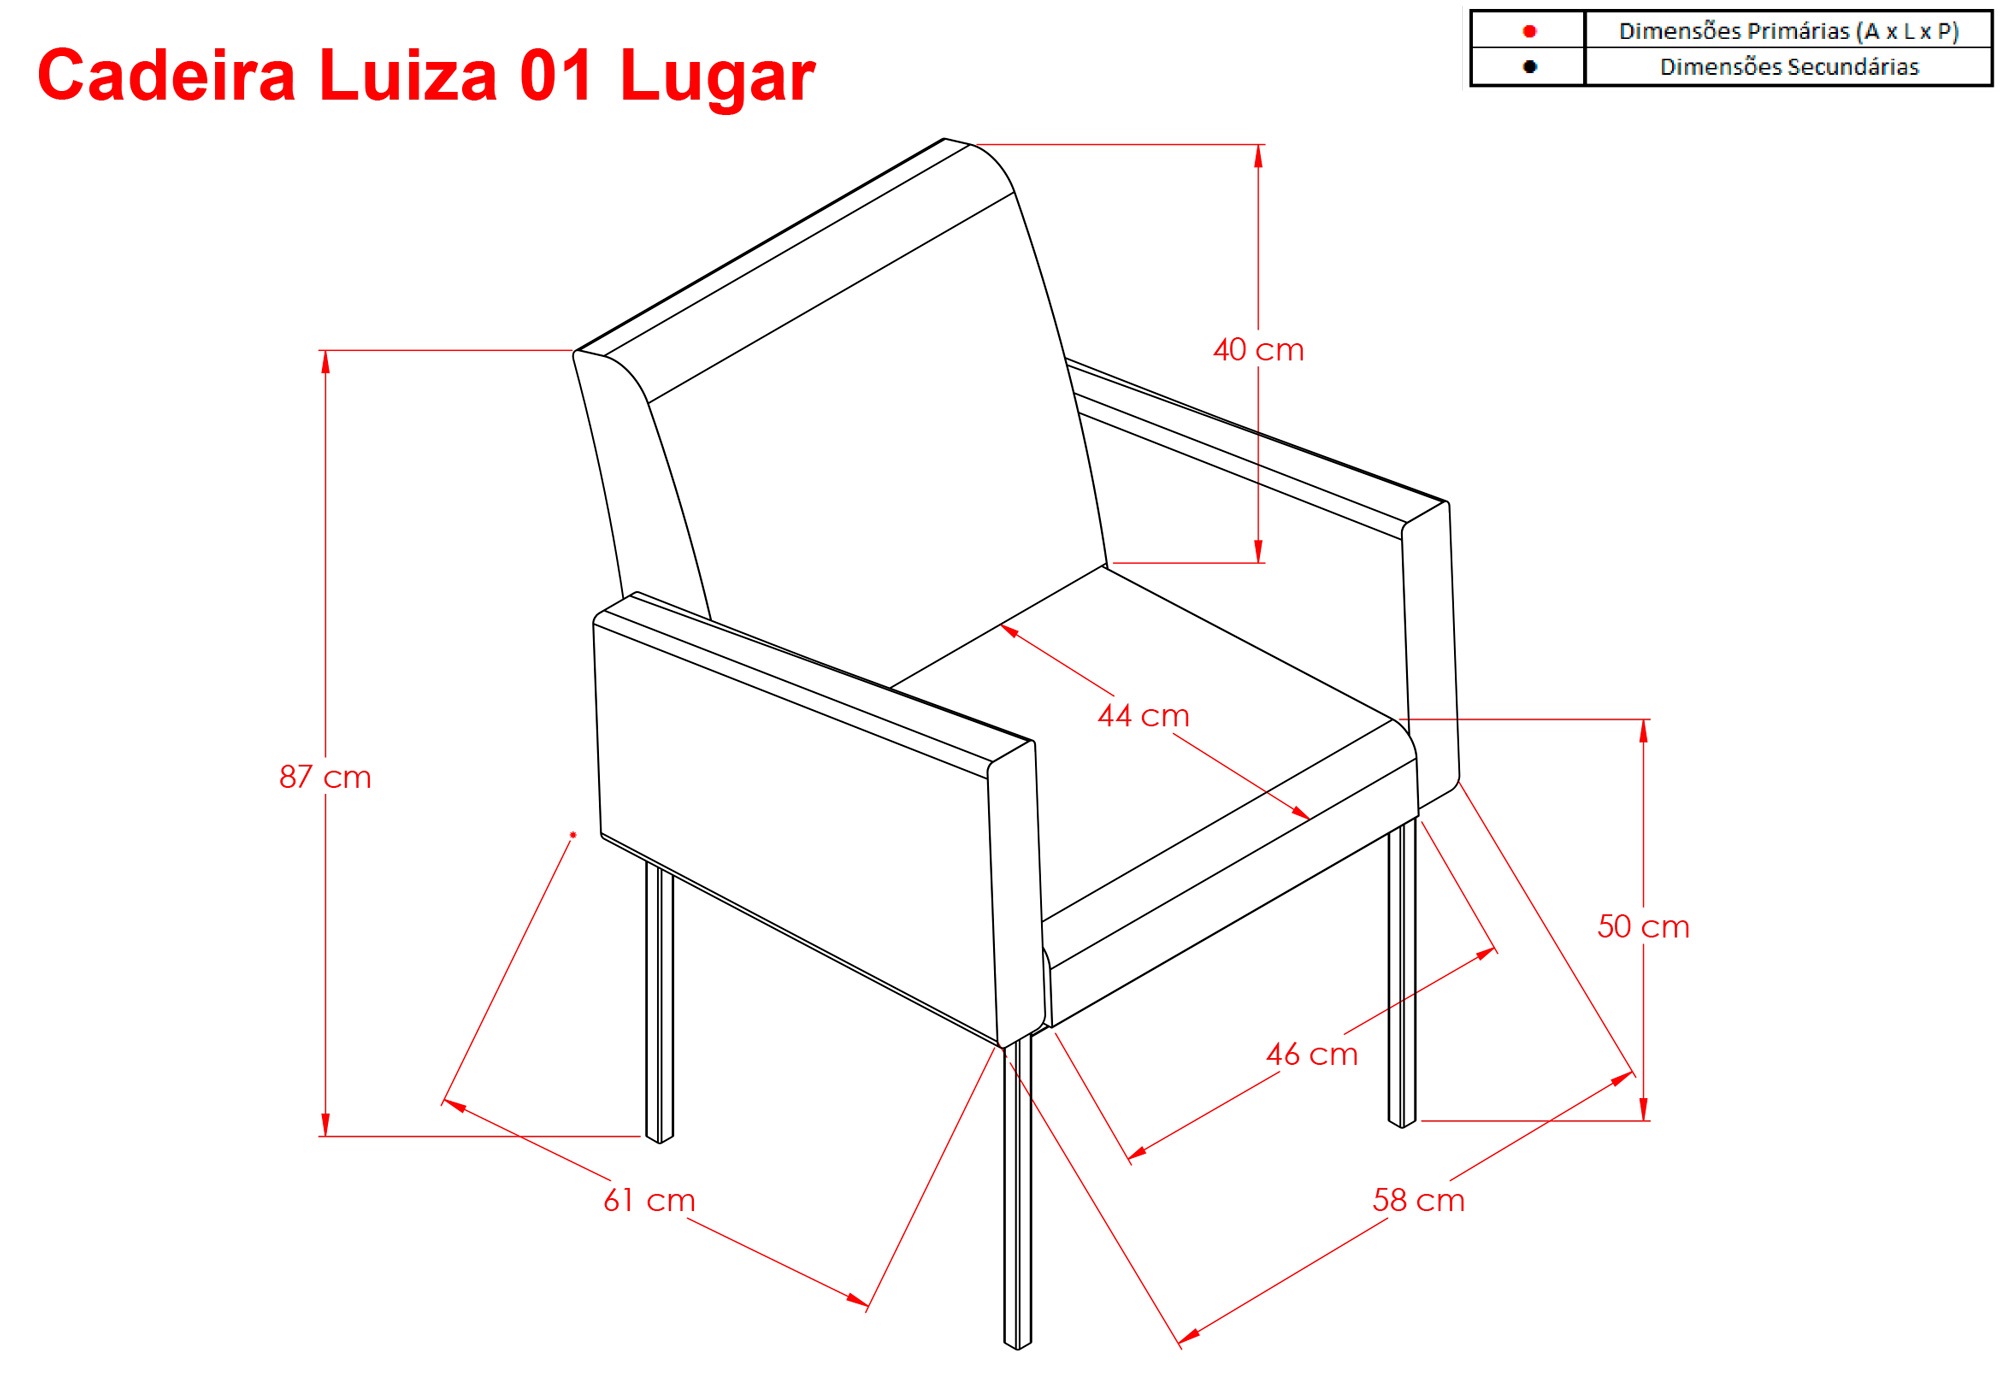 Cadeira Luiza